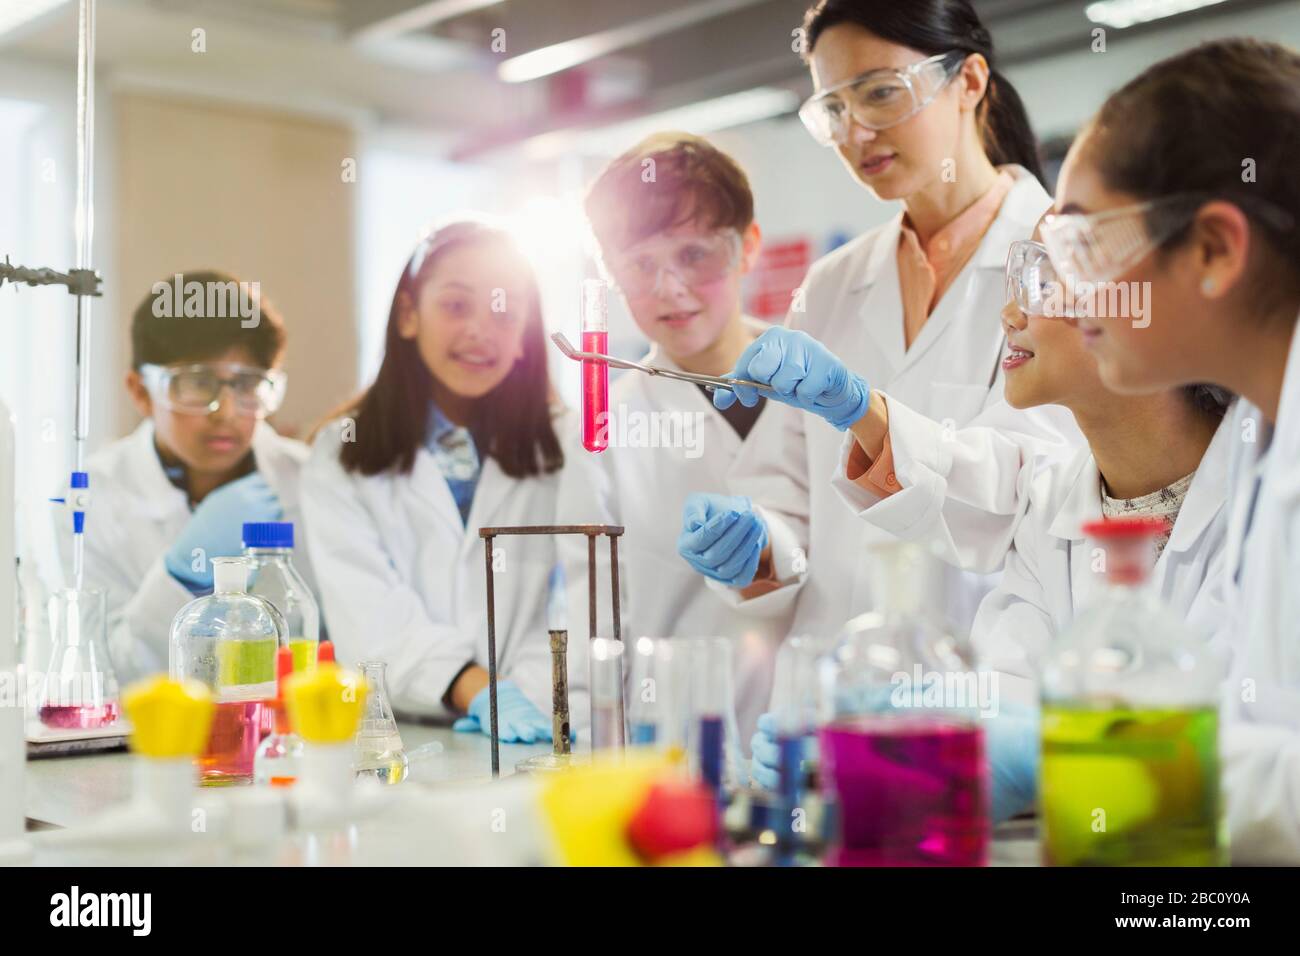 Professeur de sexe féminin et étudiant menant des expériences scientifiques, regardant le liquide dans le tube à essai en salle de classe de laboratoire Banque D'Images